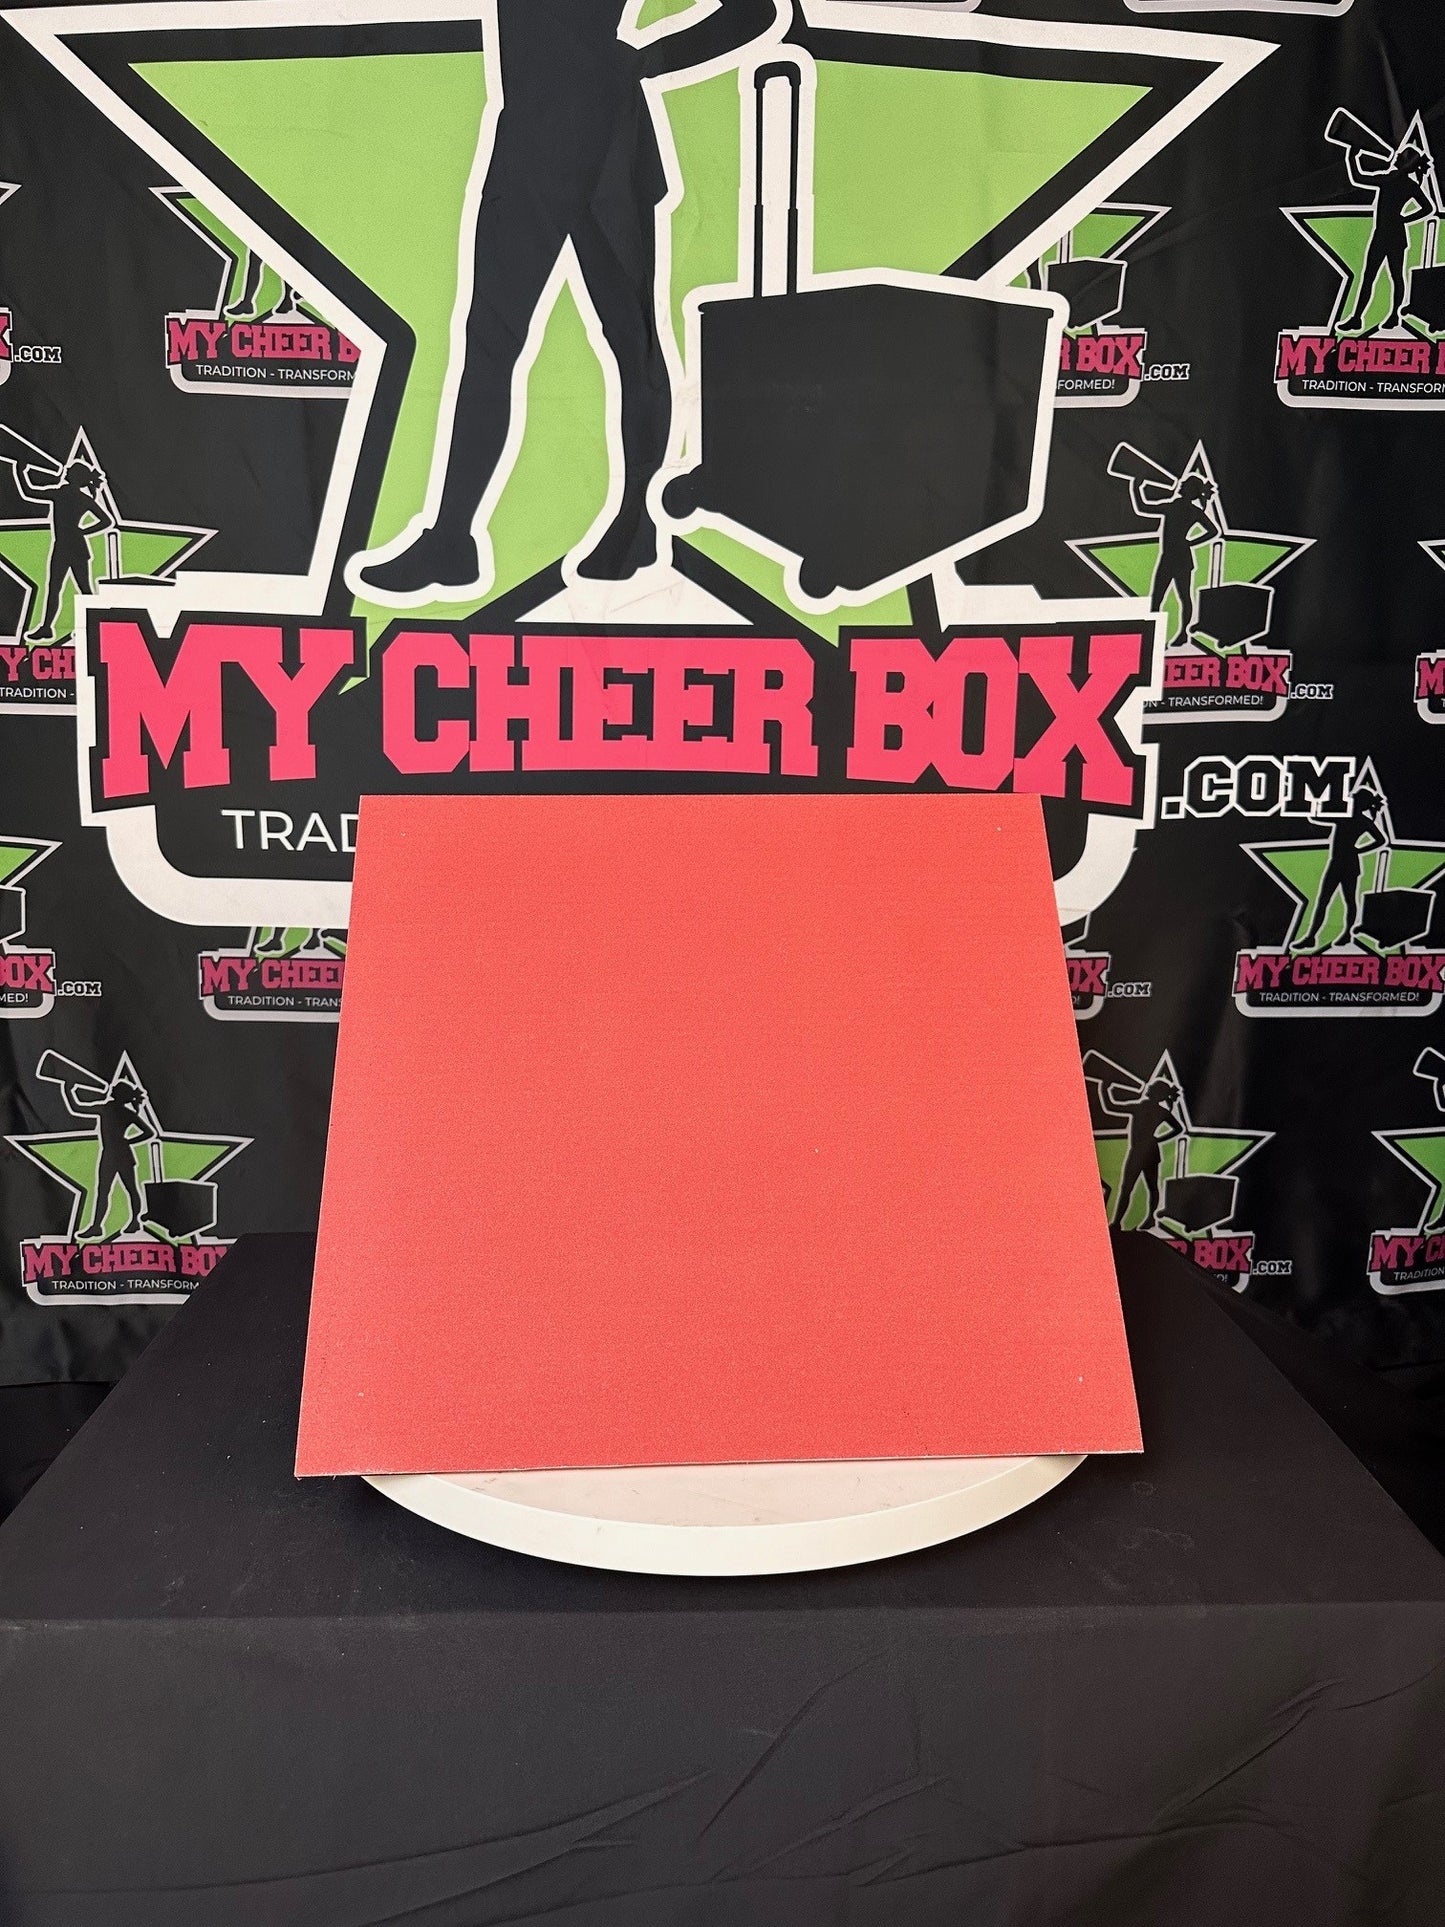 15" Collapsible Cheer Box | No Exterior Design